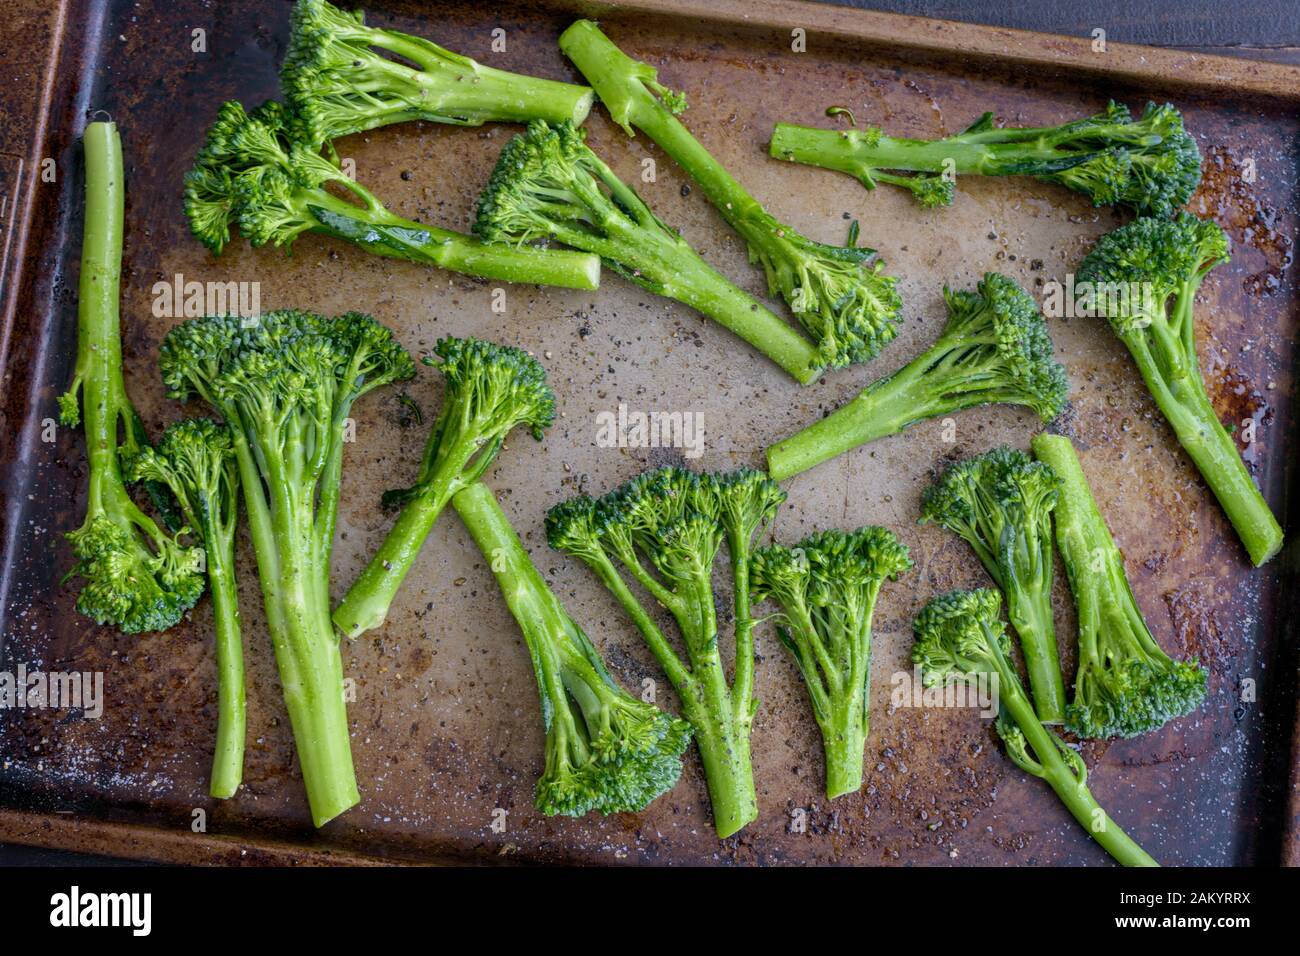 Broccolini crudo Salteado con aceite de oliva en una hoja Pan: Broccolini crudo salteado en aceite de oliva y condimentado con sal y pimienta Foto de stock